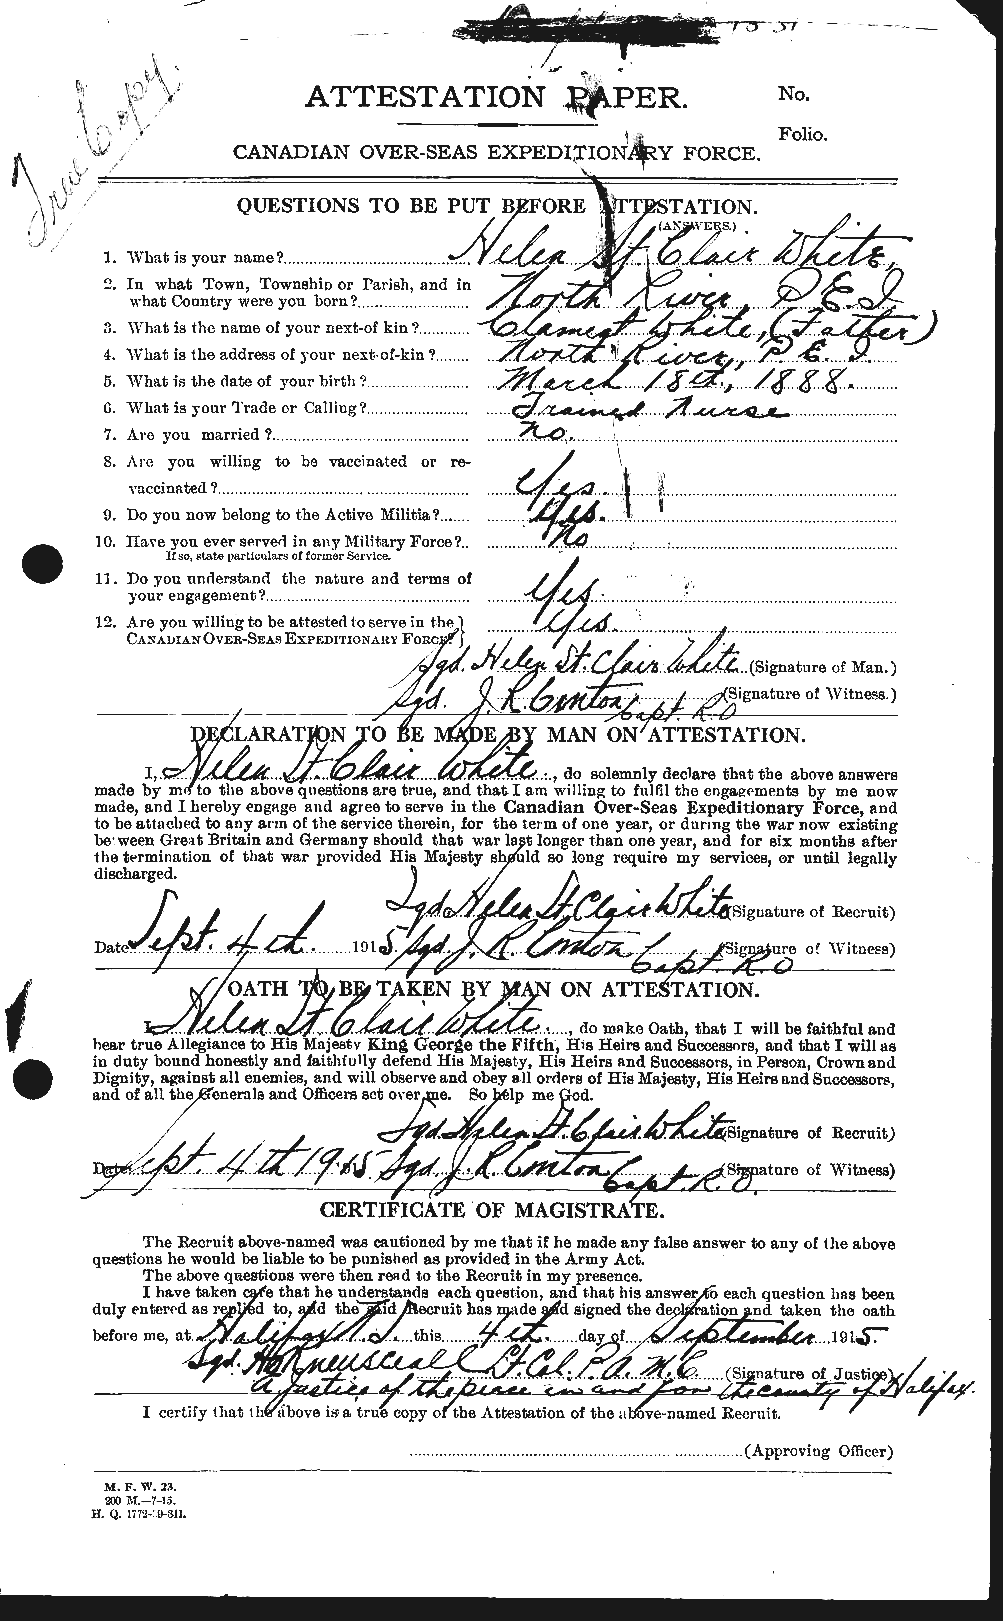 Dossiers du Personnel de la Première Guerre mondiale - CEC 669632a